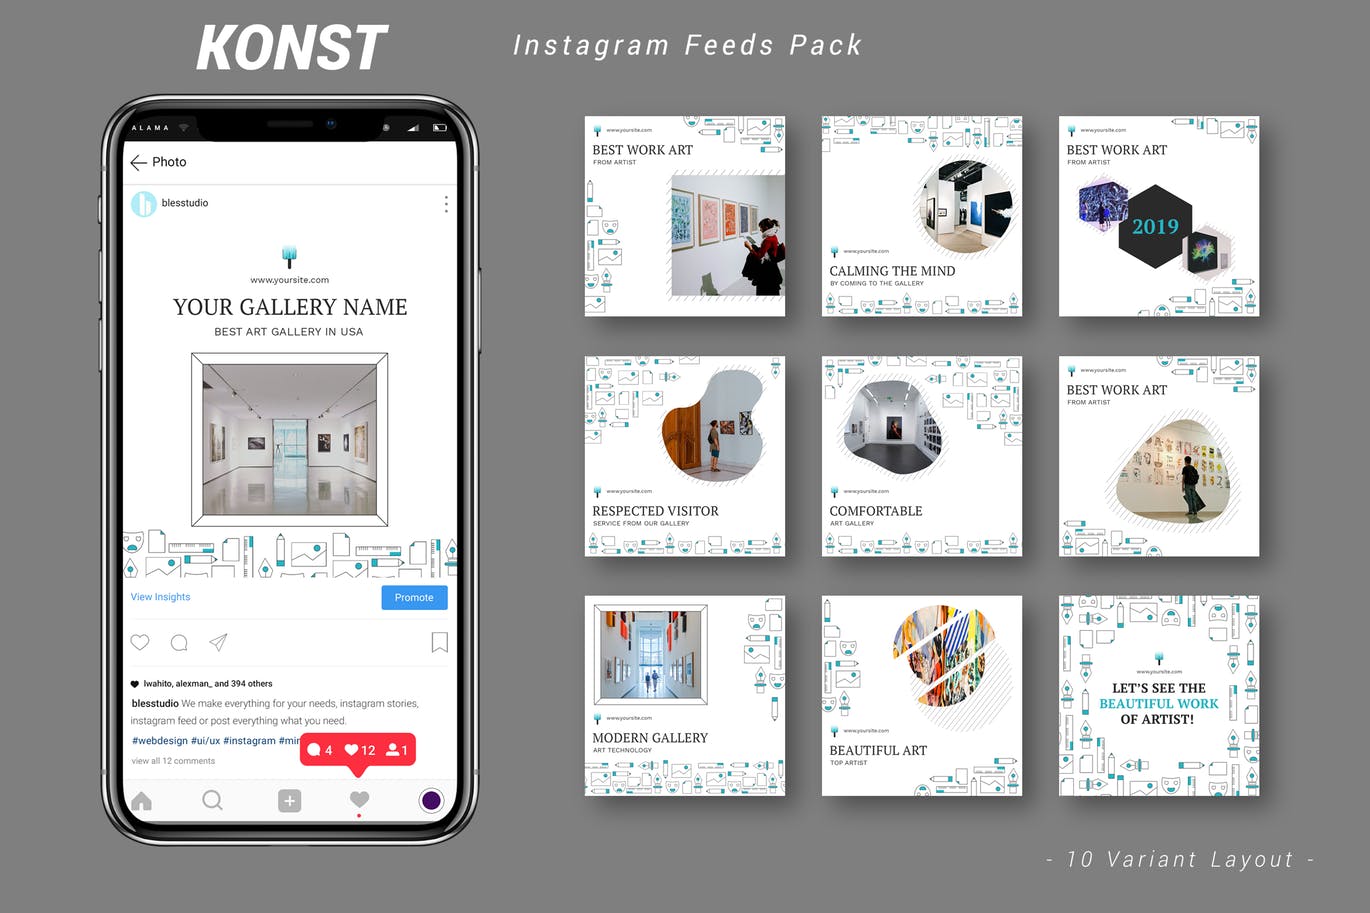 创意艺术展览主题Instagram信息流广告设计模板素材库精选 Konst – Instagram Feeds Pack插图